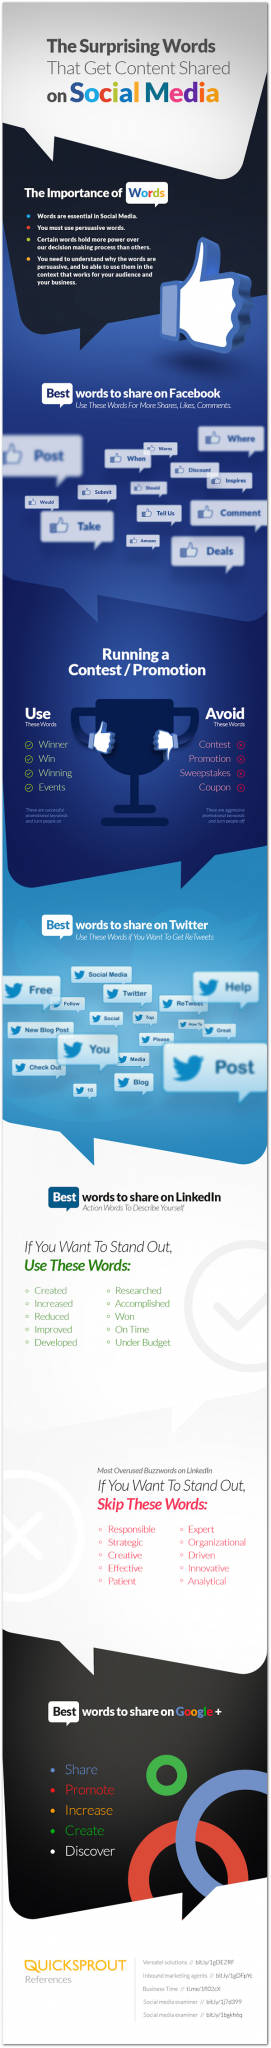 Las palabras que funcionan mejor en cada red social para conseguir que compartan tu contenido